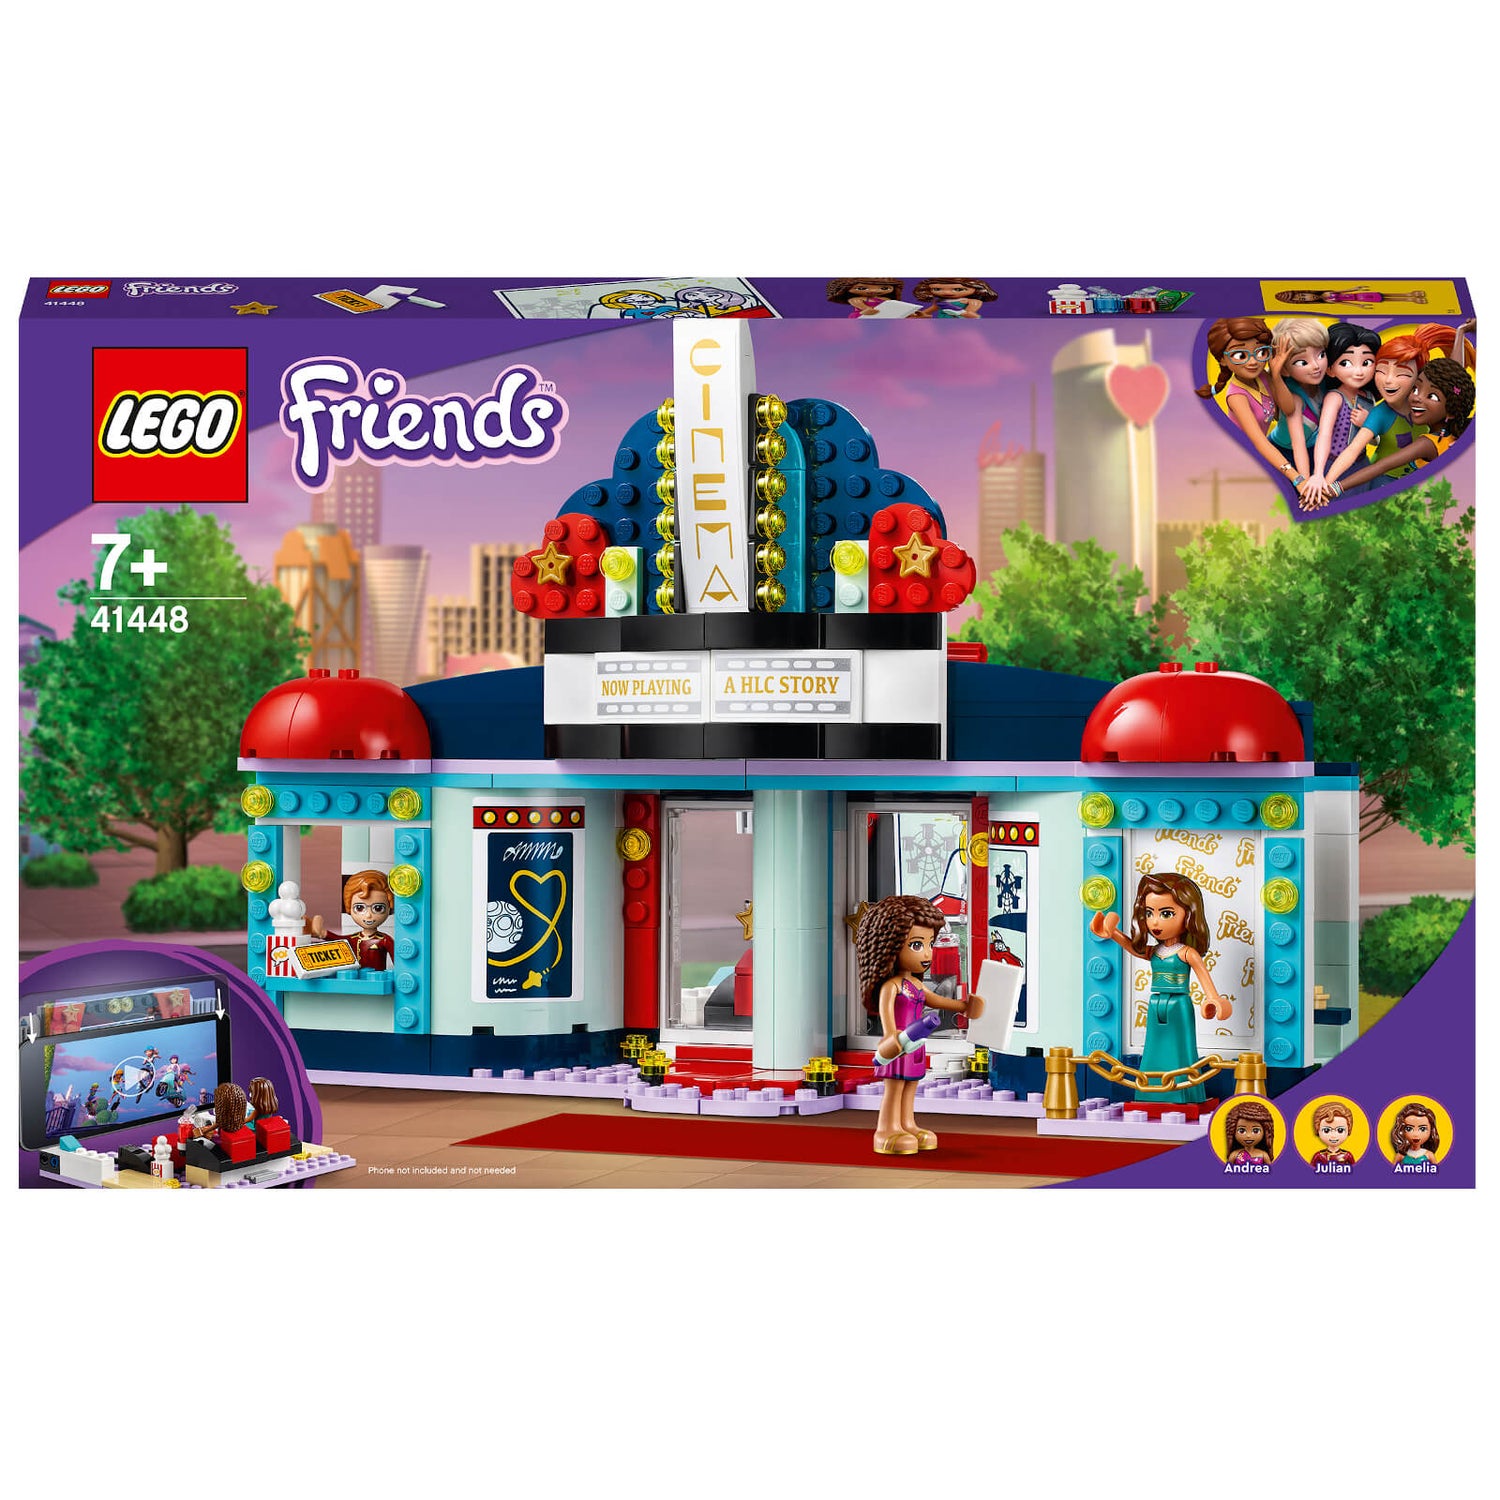 LEGO Friends: Heartlake City Movie Theatre (41448)